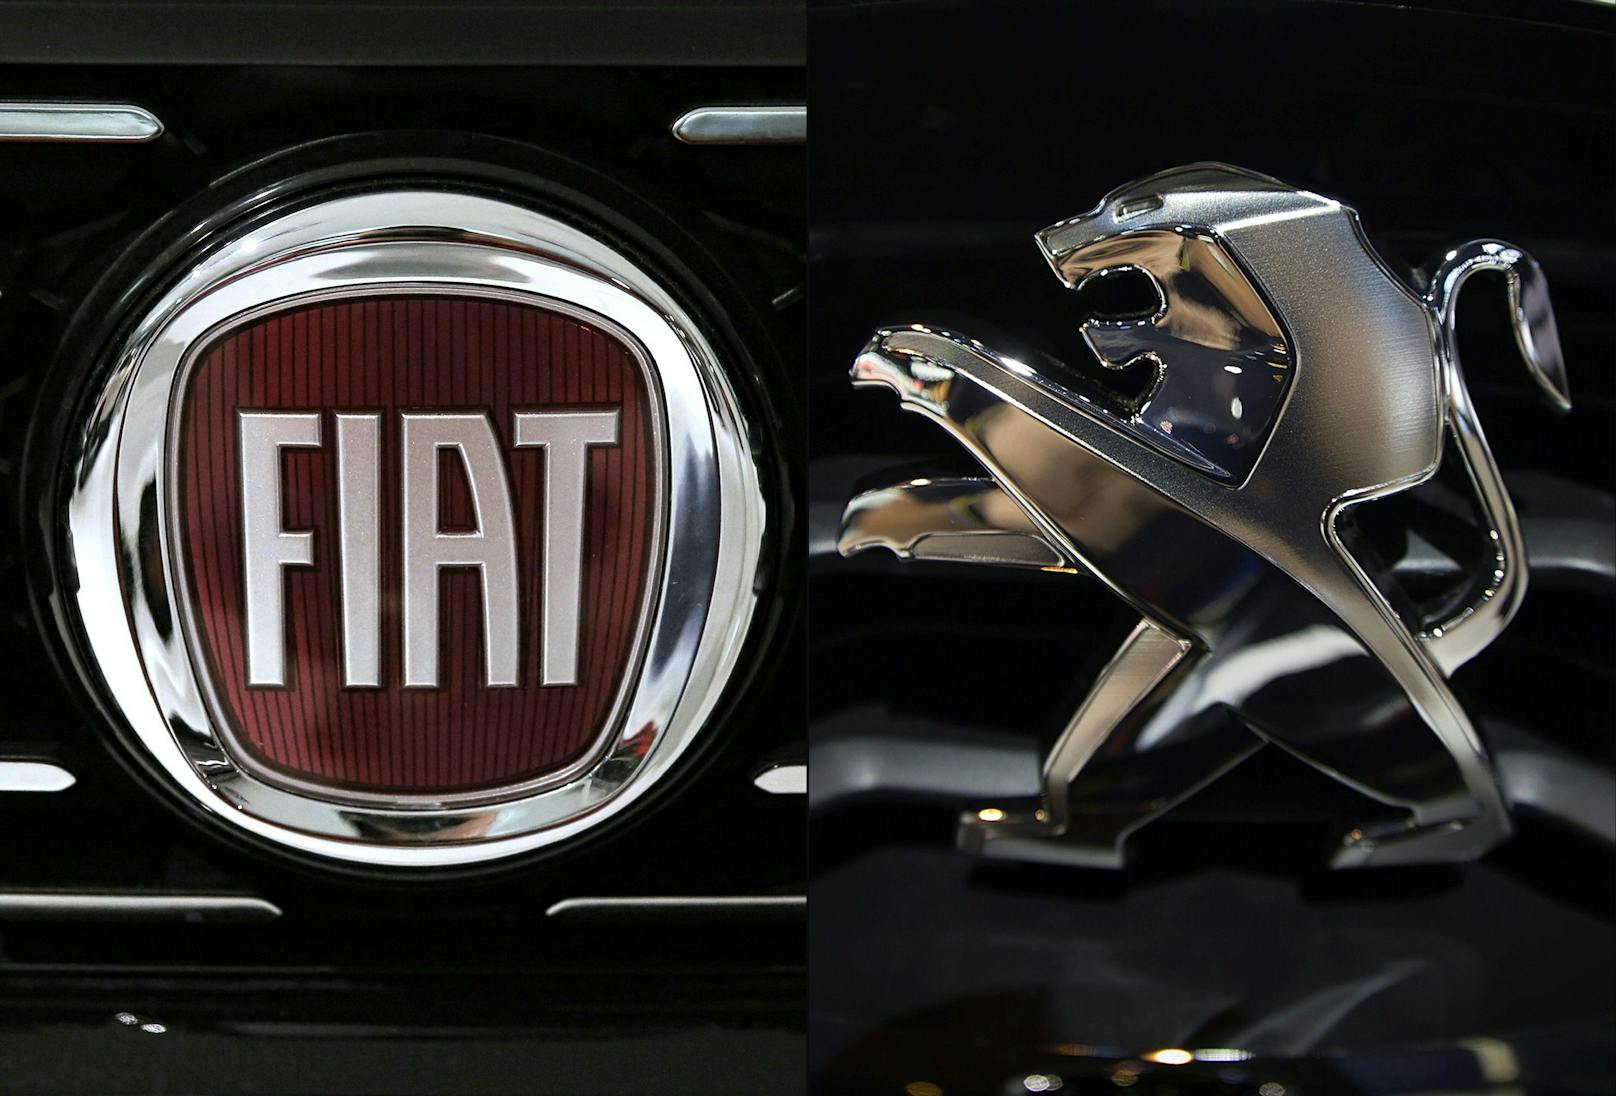 Aktionäre stimmen Fusion von Fiat Chrysler mit PSA zu